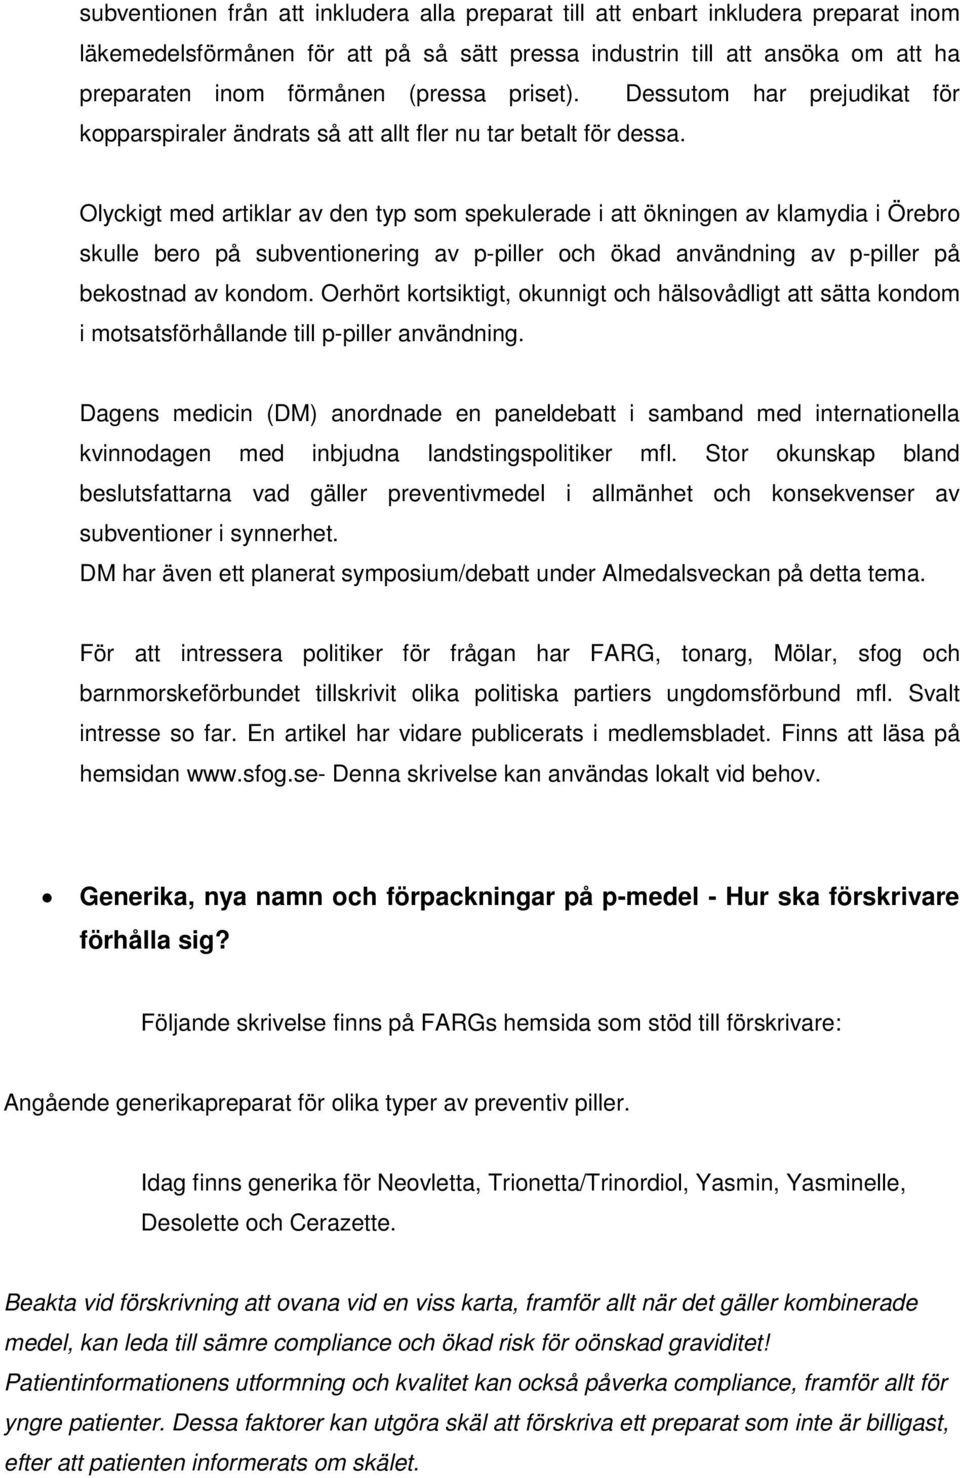 Olyckigt med artiklar av den typ som spekulerade i att ökningen av klamydia i Örebro skulle bero på subventionering av p-piller och ökad användning av p-piller på bekostnad av kondom.